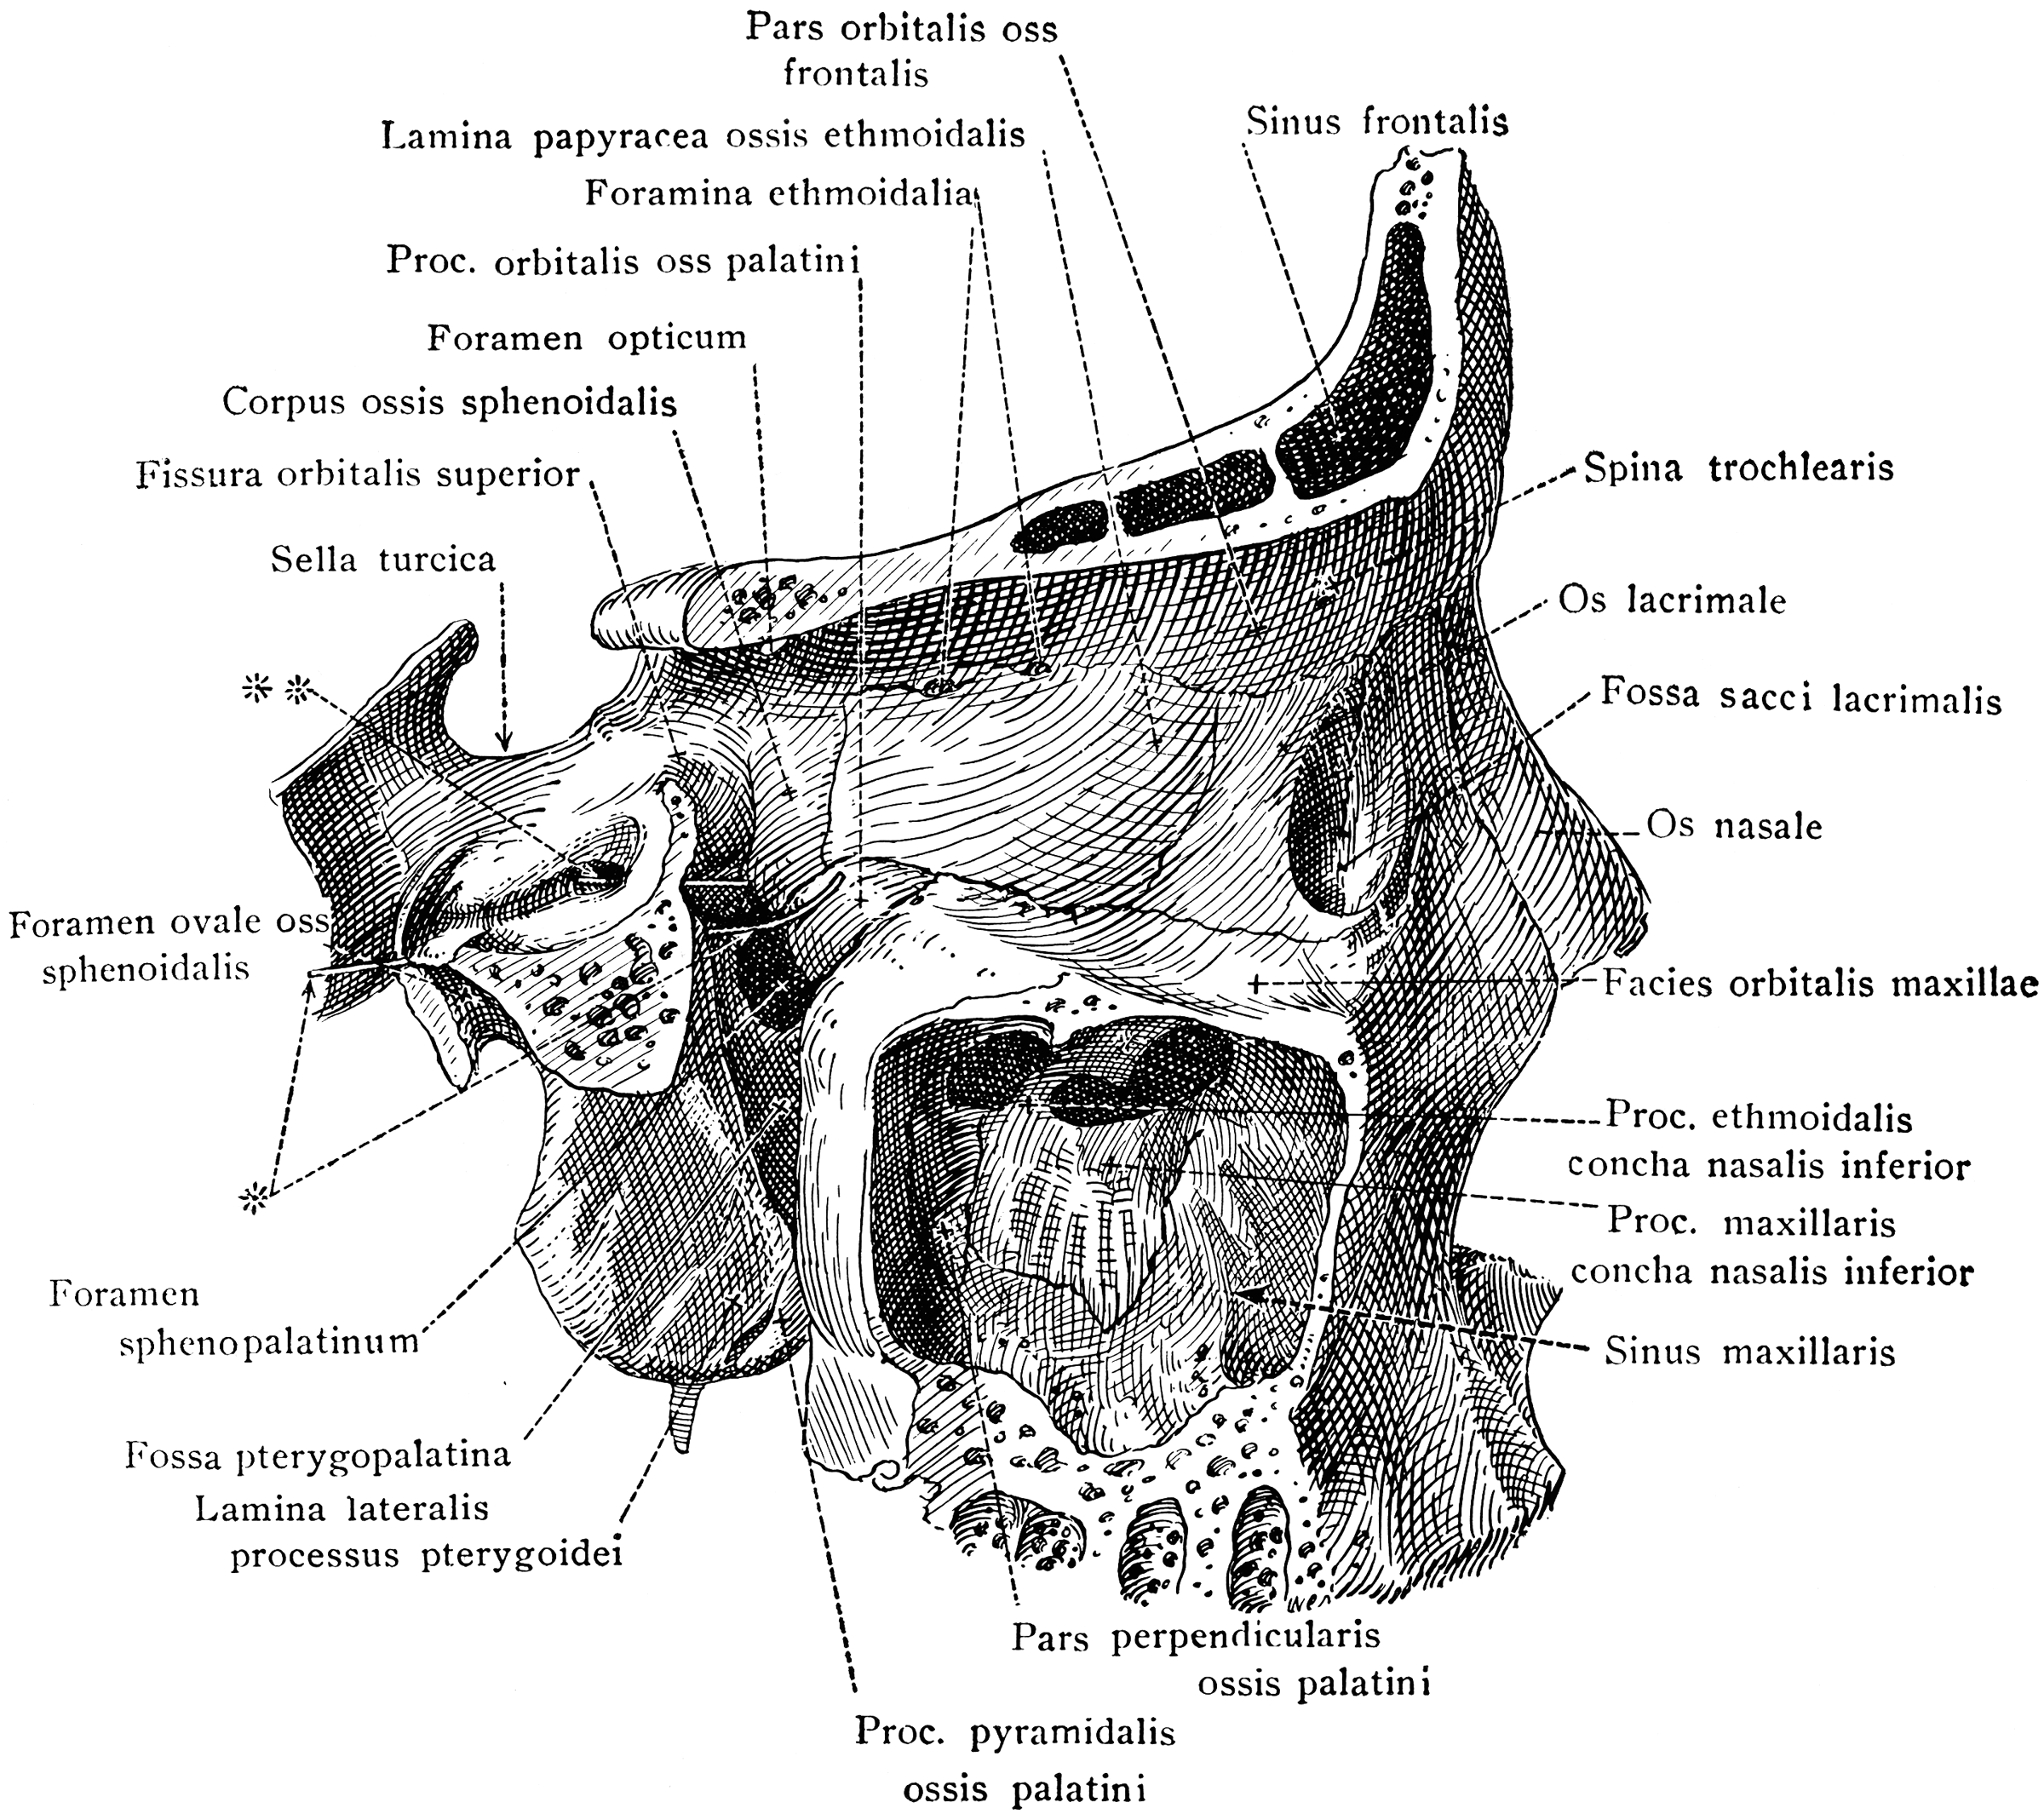 Pterygoid Fossa and Maxillary Sinus | ClipArt ETC